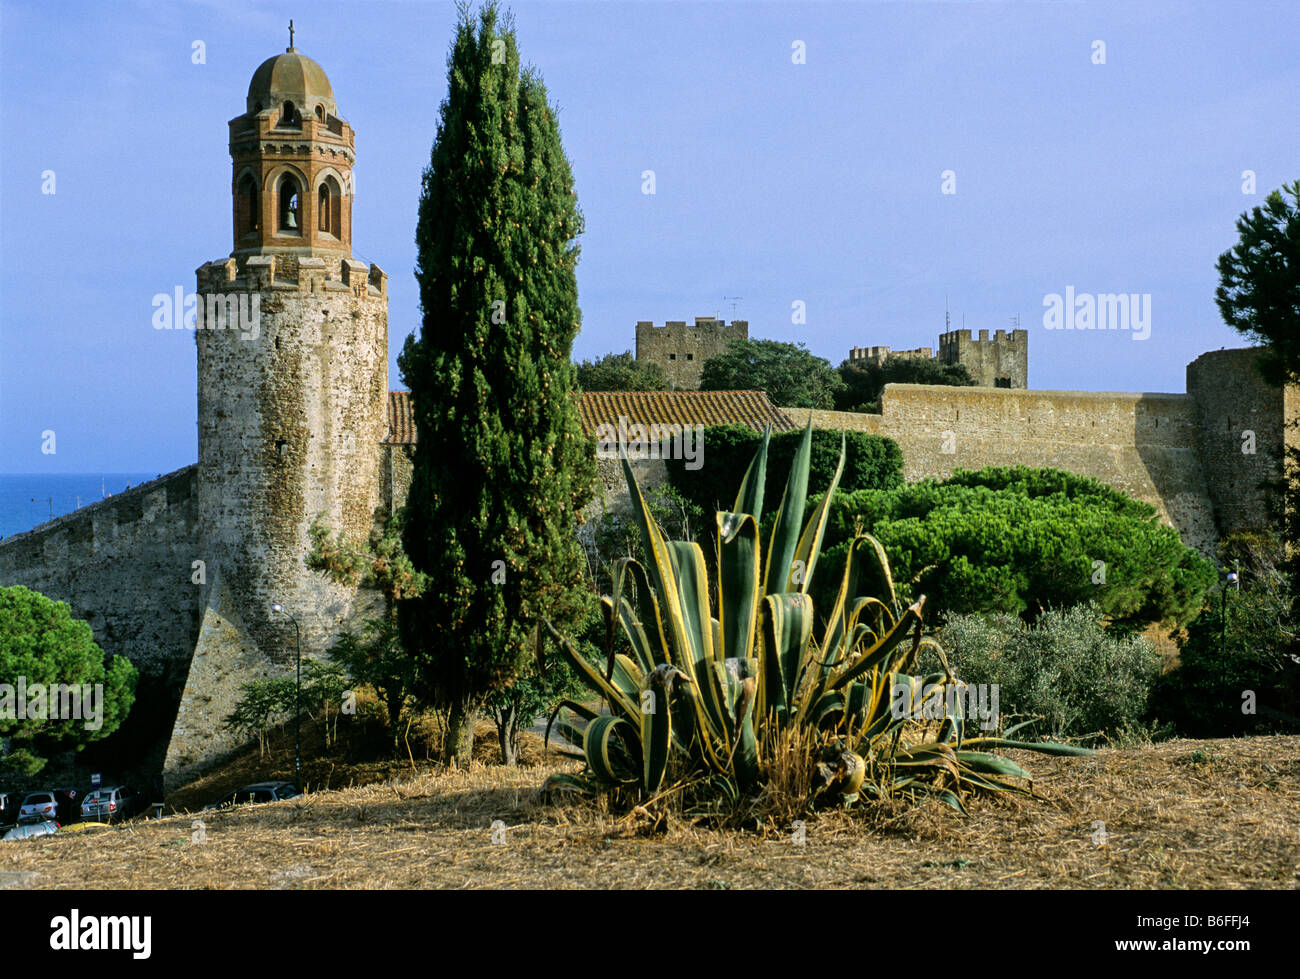 Fortezza avec l'Aragonais Rocca Campanile, Castiglione della Pescaia, la Maremme, Province de Grosseto, Toscane, Italie, Europe Banque D'Images